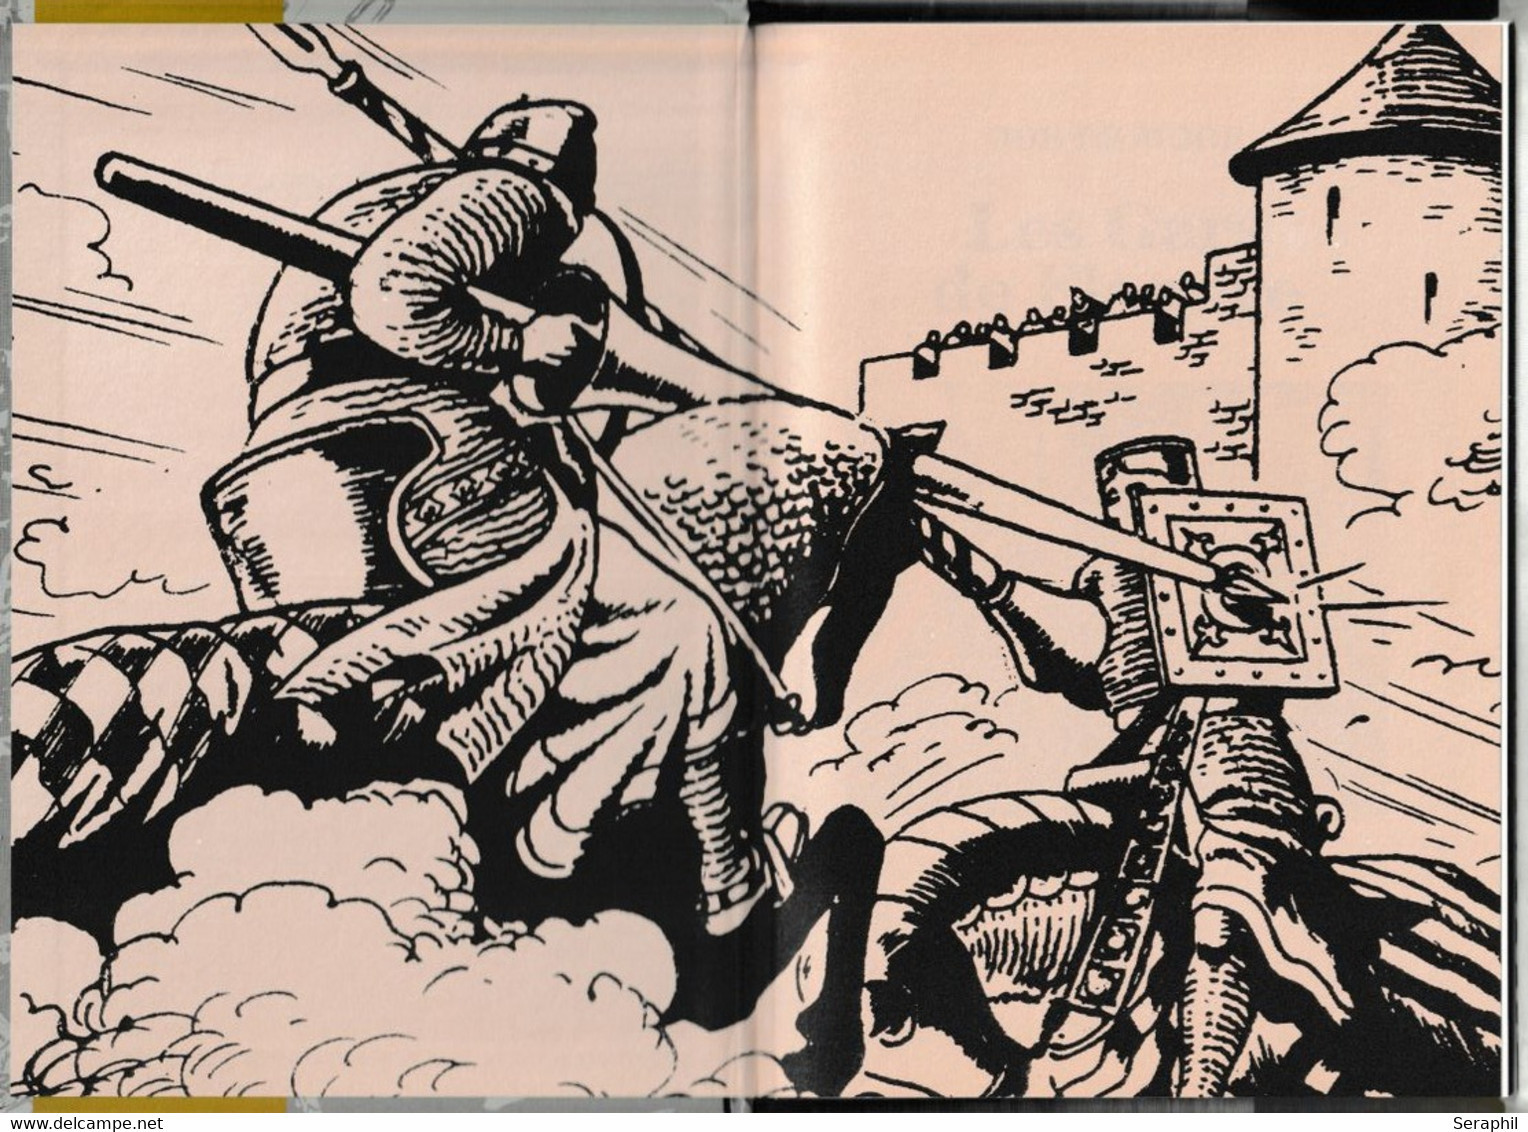 Livre Bande Dessinée -  Les Gars De Flandre - Bob De Moor - Timbres N° 3088/89 - 2002 - FR - Philabédés (fumetti)